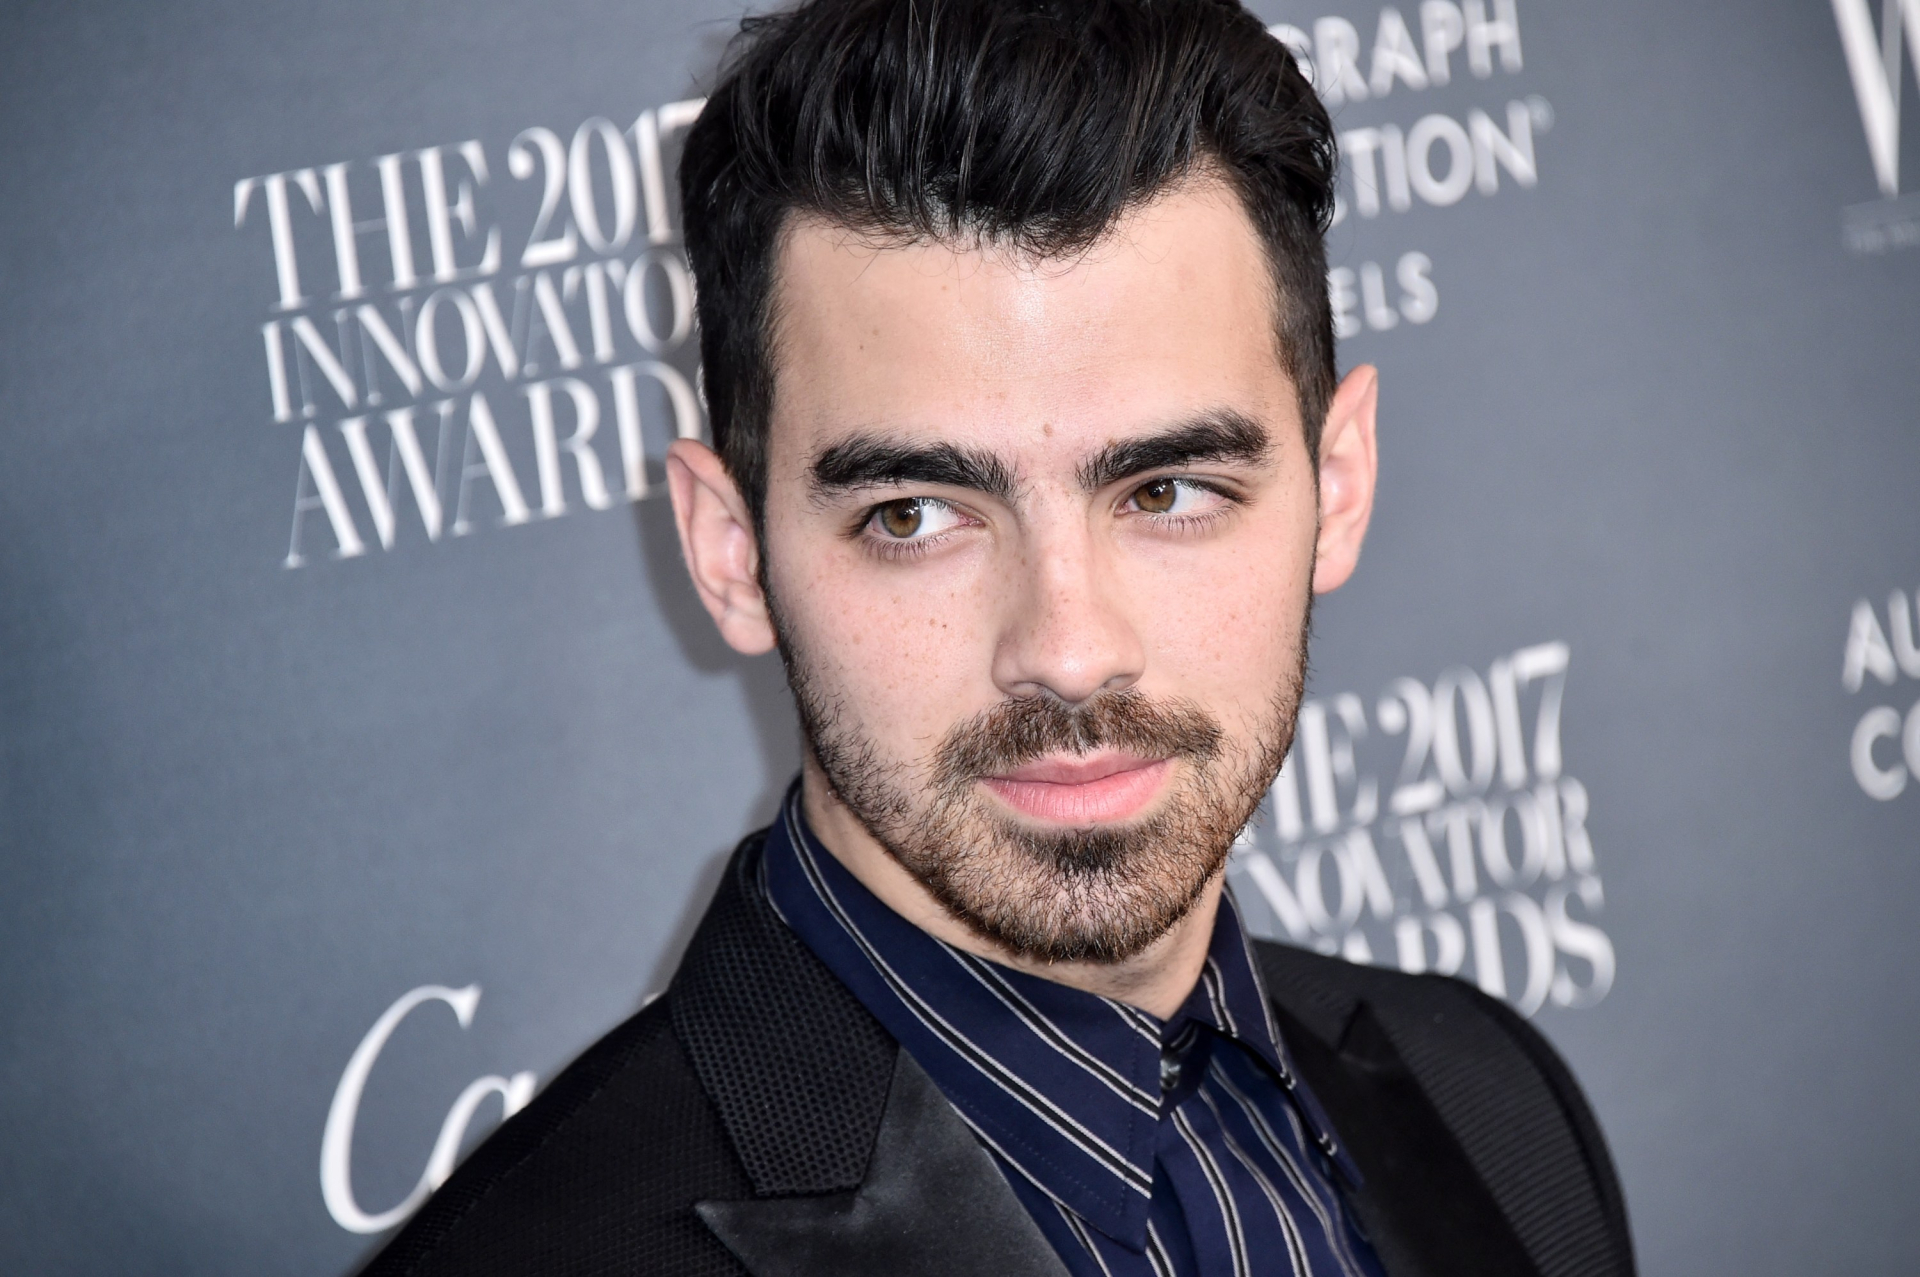 Joe Jonas újra foglalt: kiderült, ki az új választottja